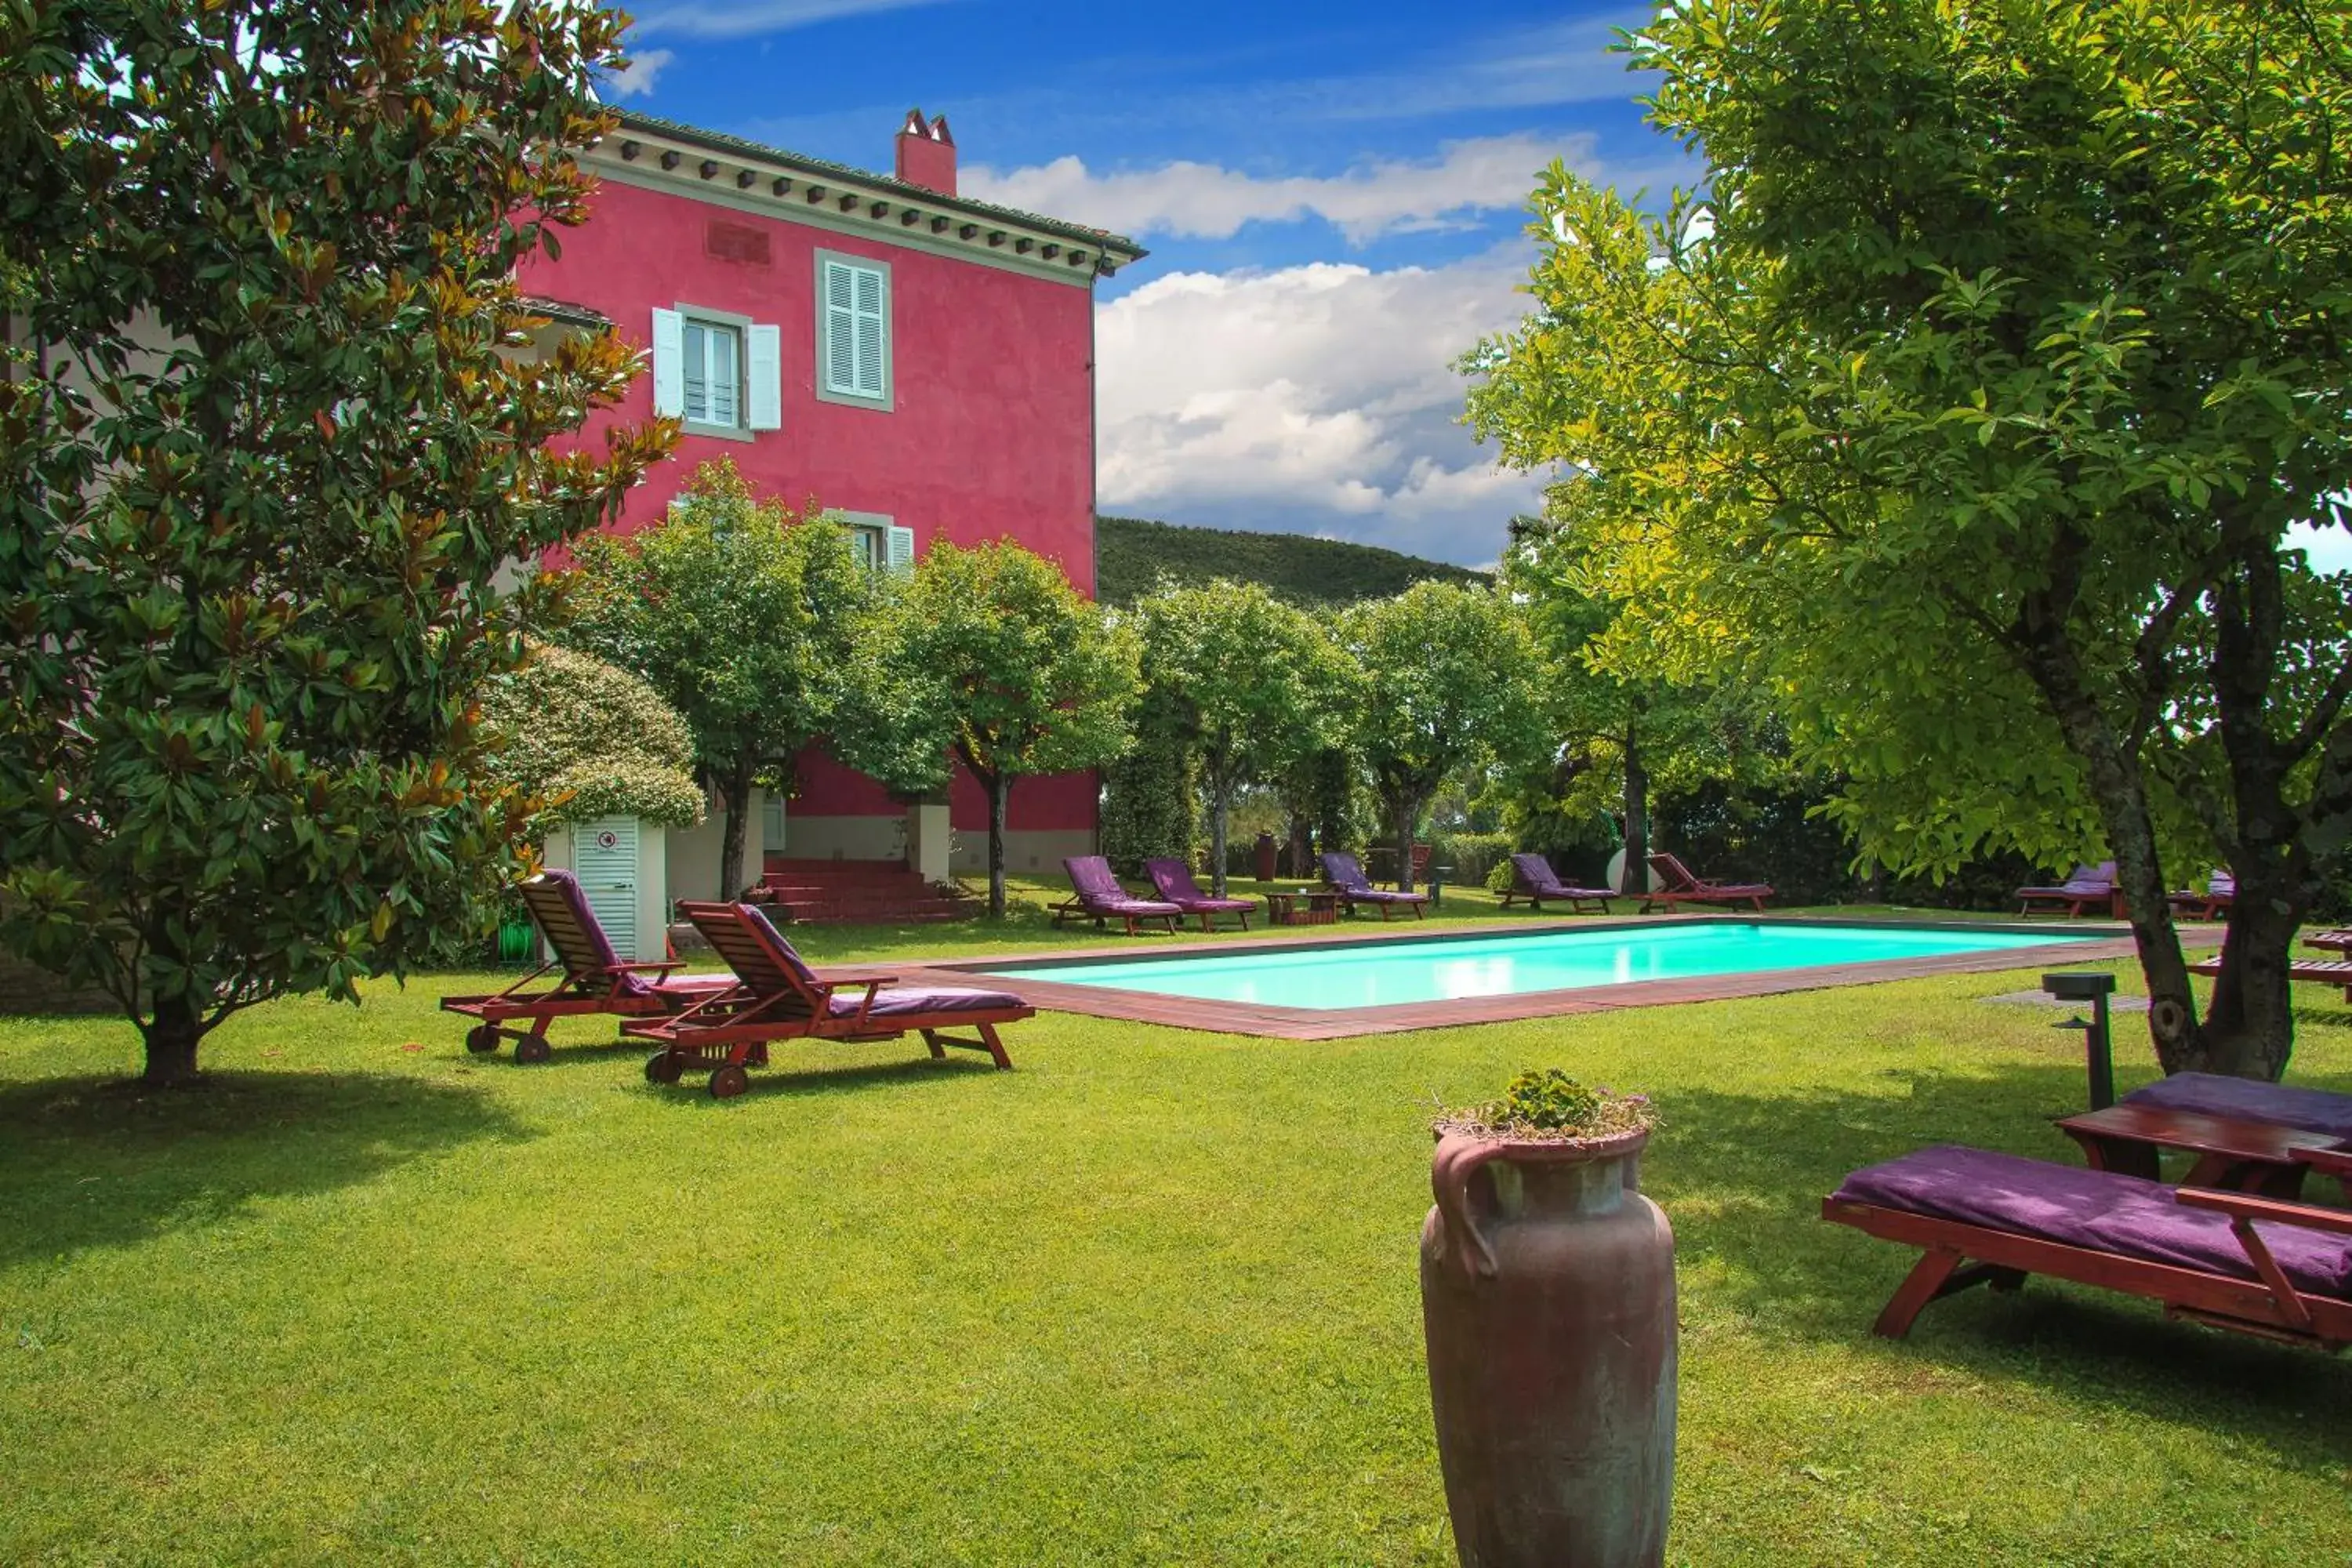 Property building, Swimming Pool in Villa Cassia di Baccano